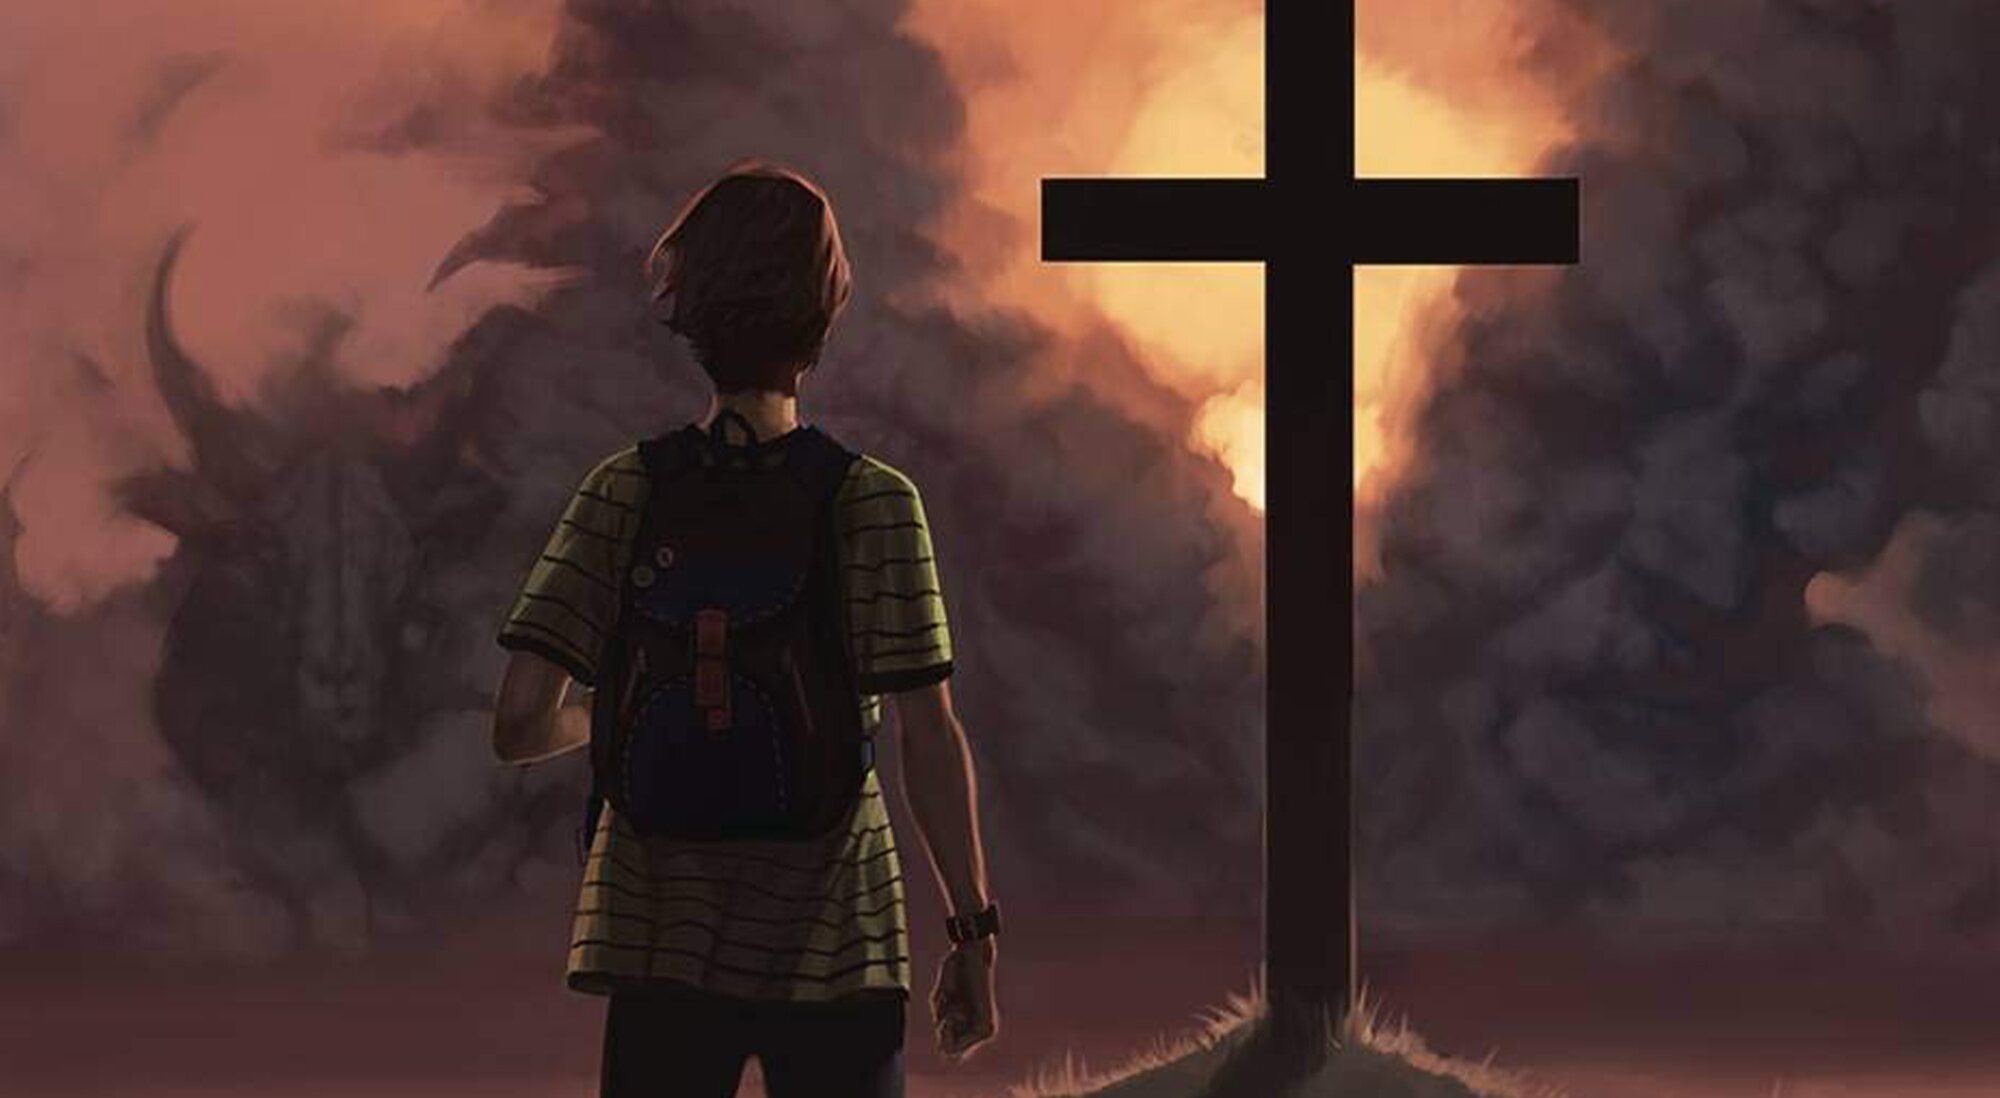 Portada de "American Jesus", el cómic en el que se basa 'El elegido'